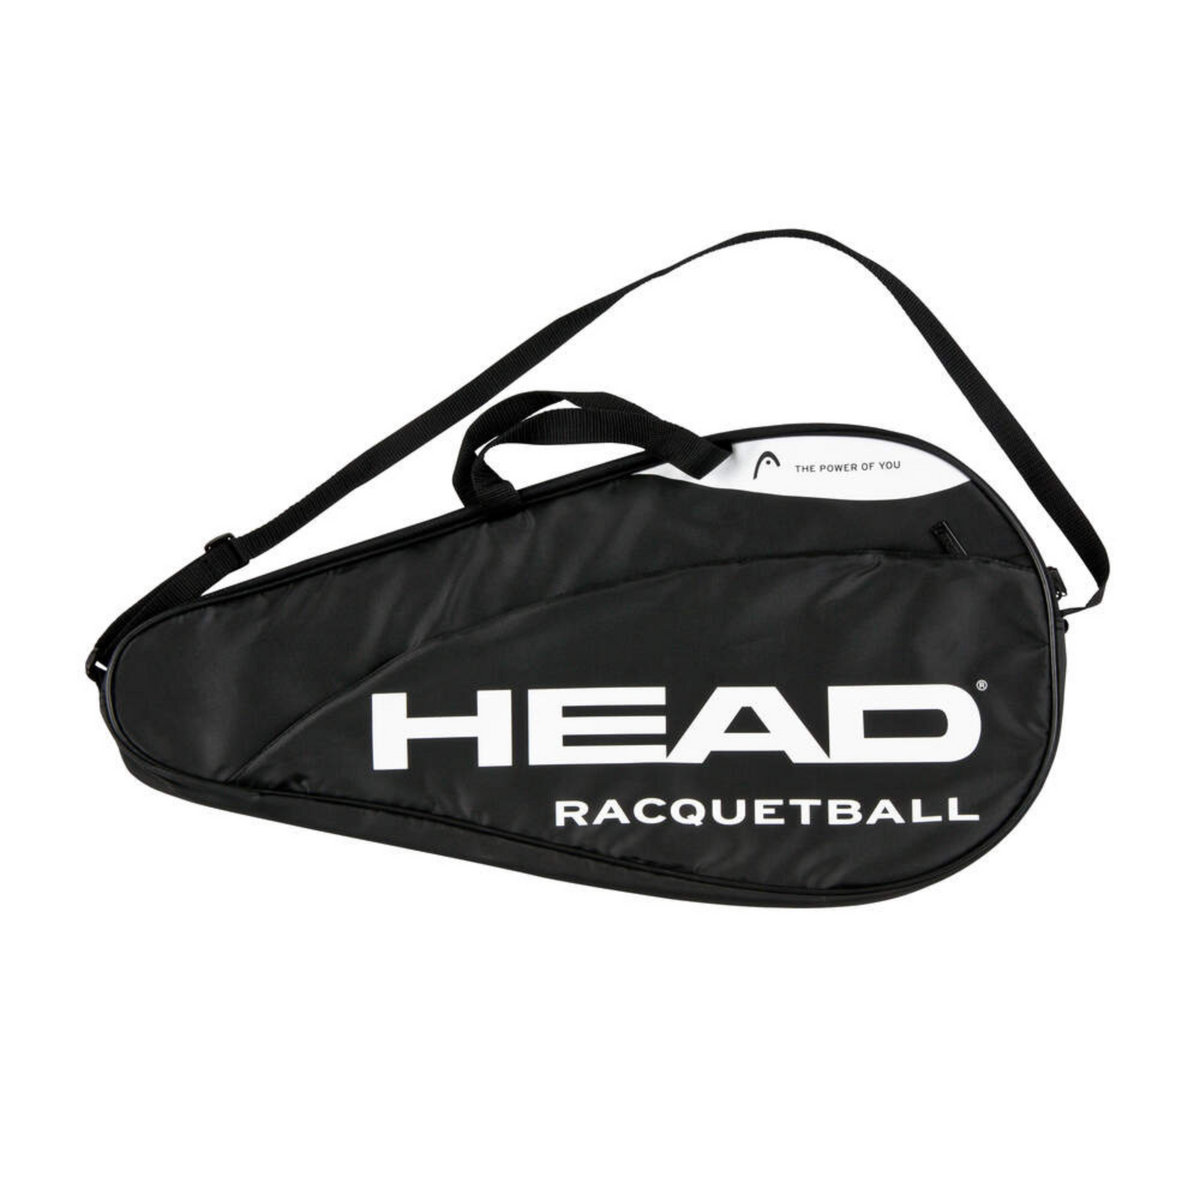 Racquetball Racquet Bag Case